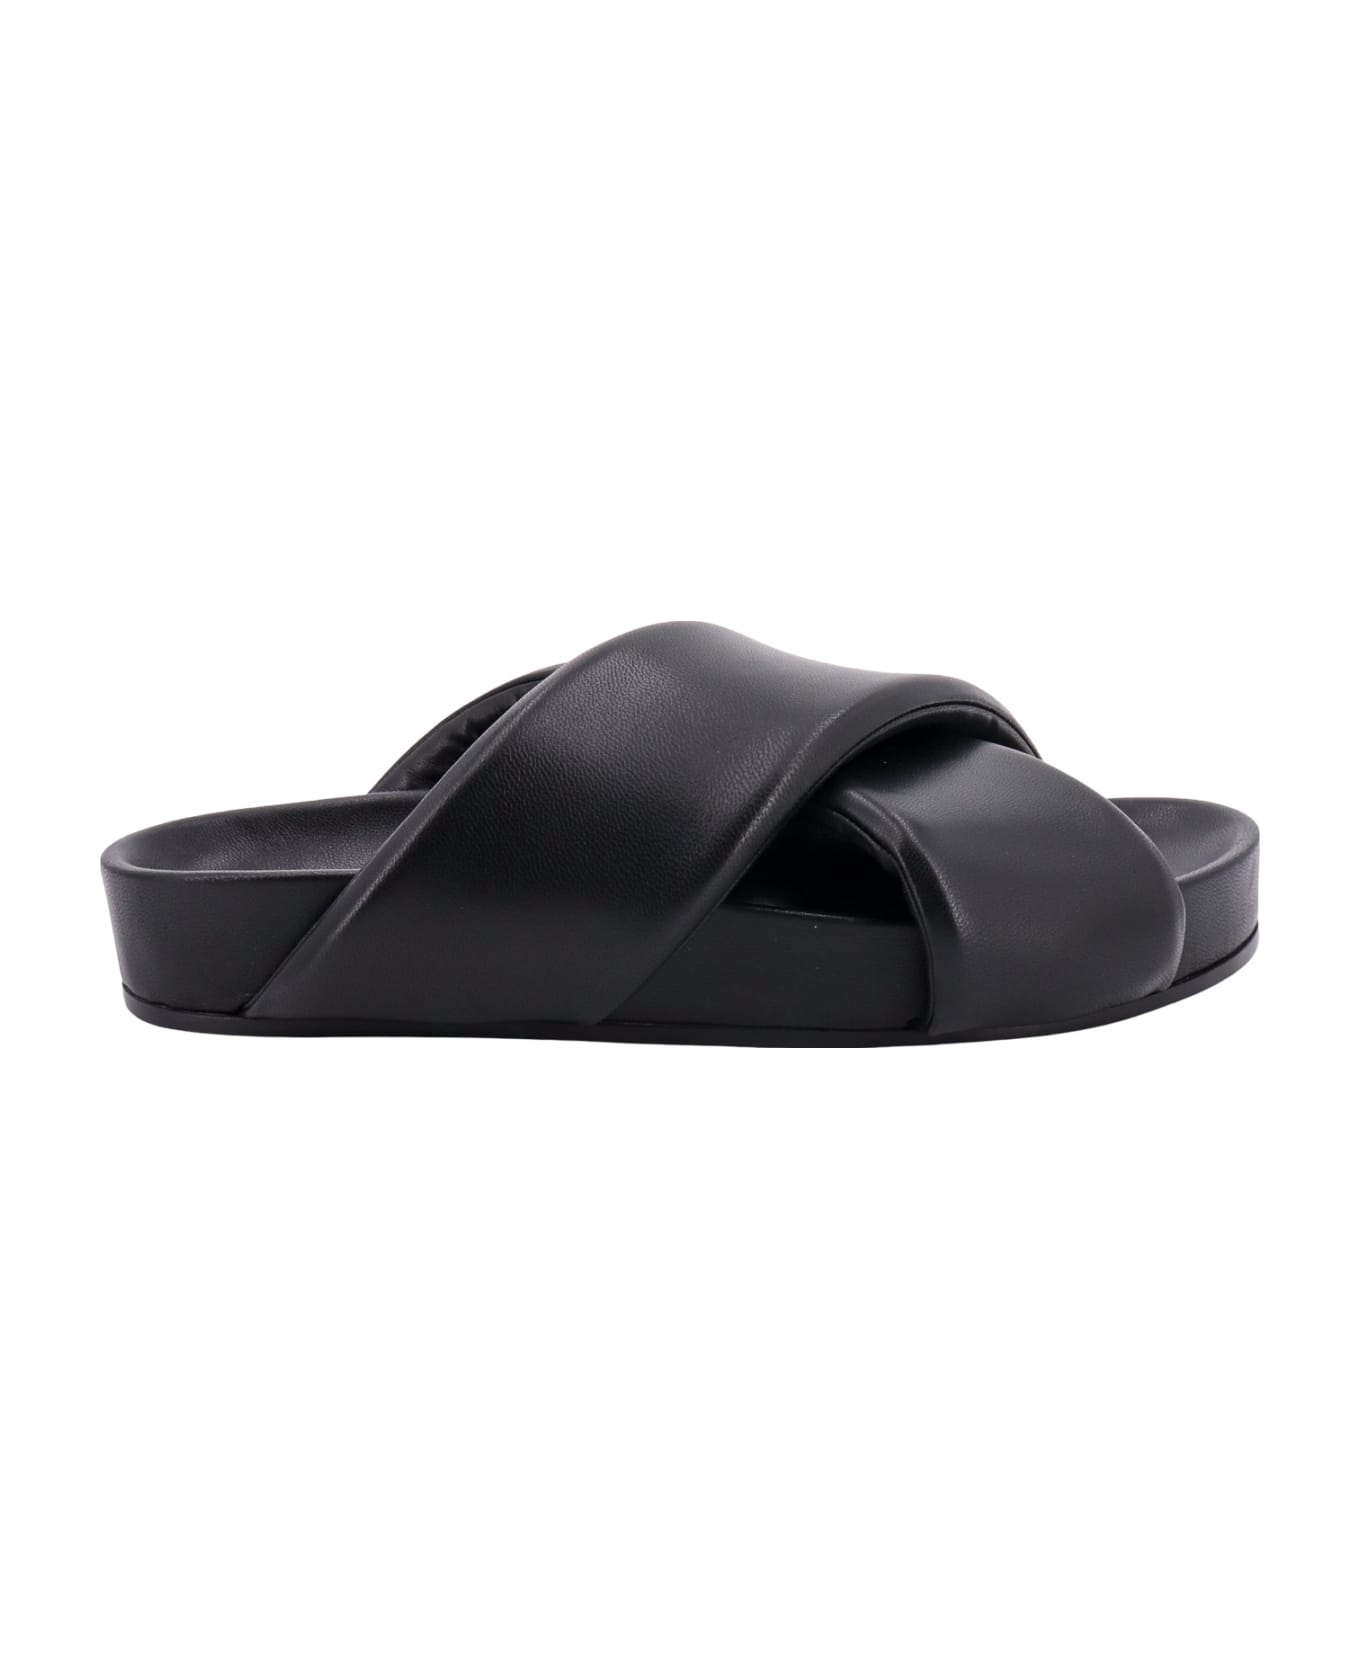 Jil Sander Black Leather Slides - Black